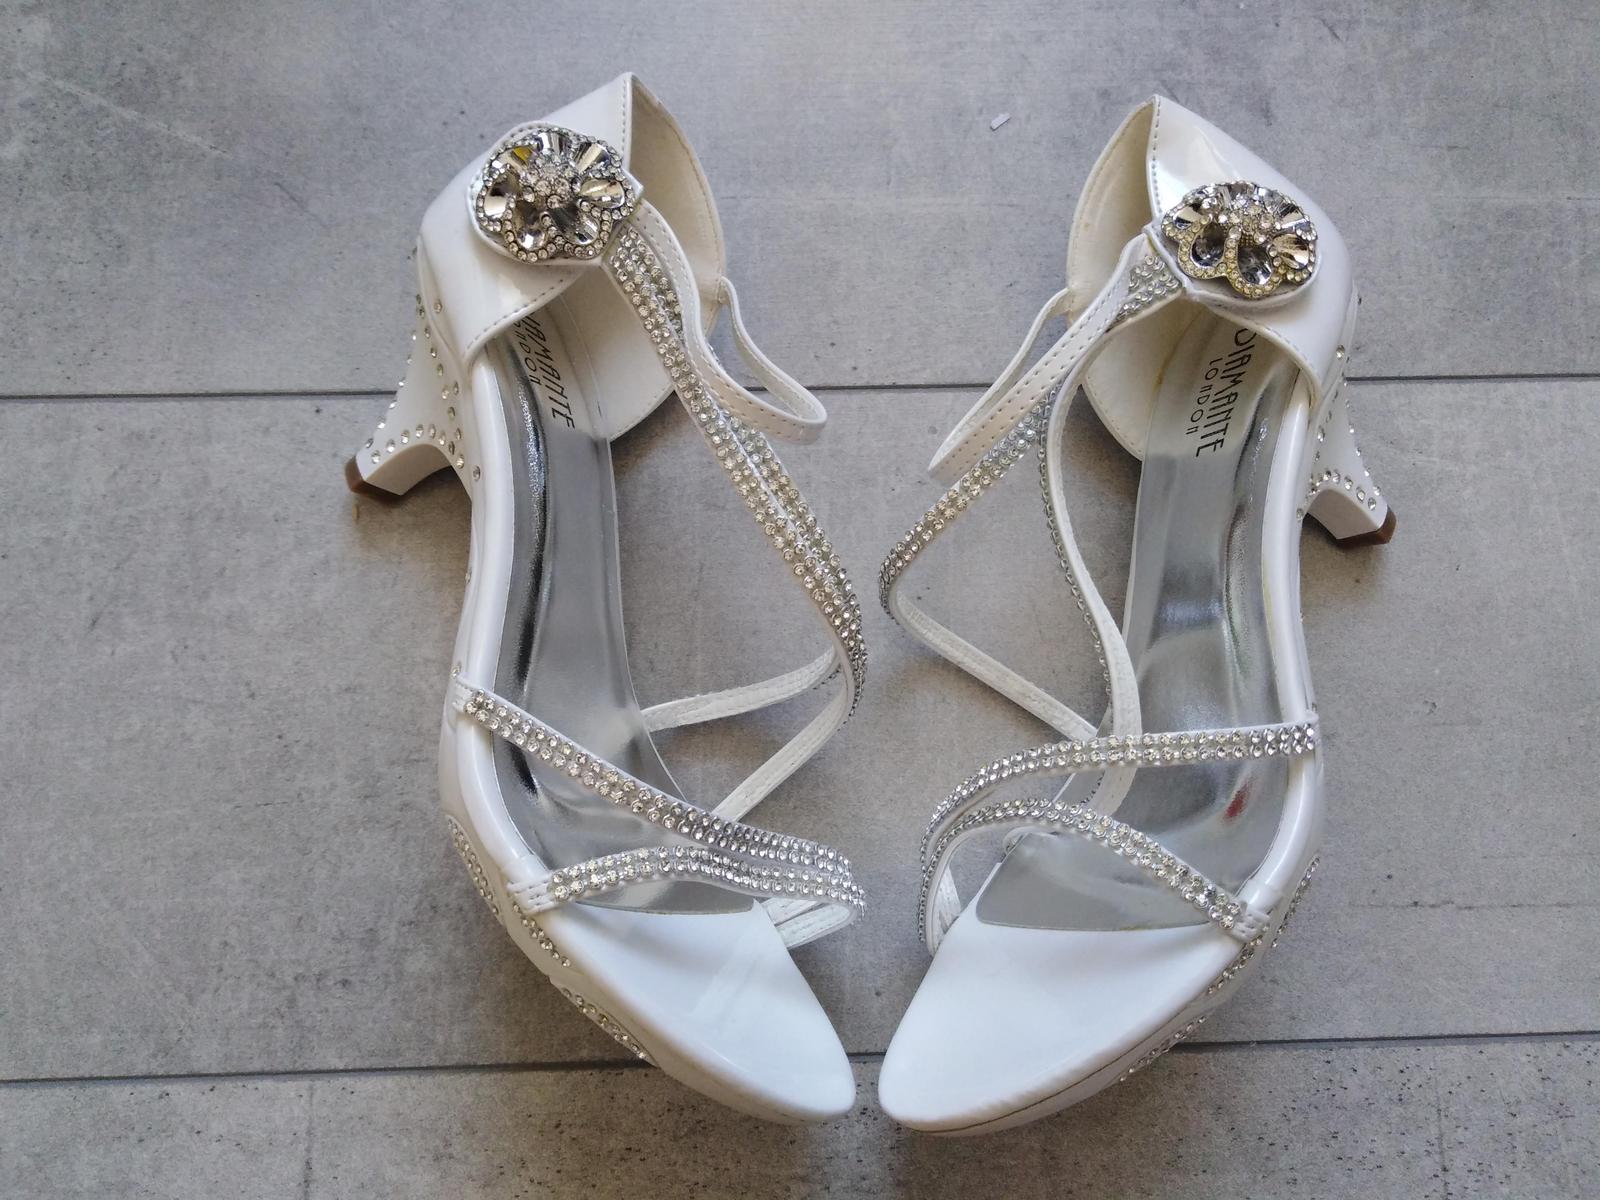 SKLADEM - svatební bílé sandálky - Obrázek č. 3